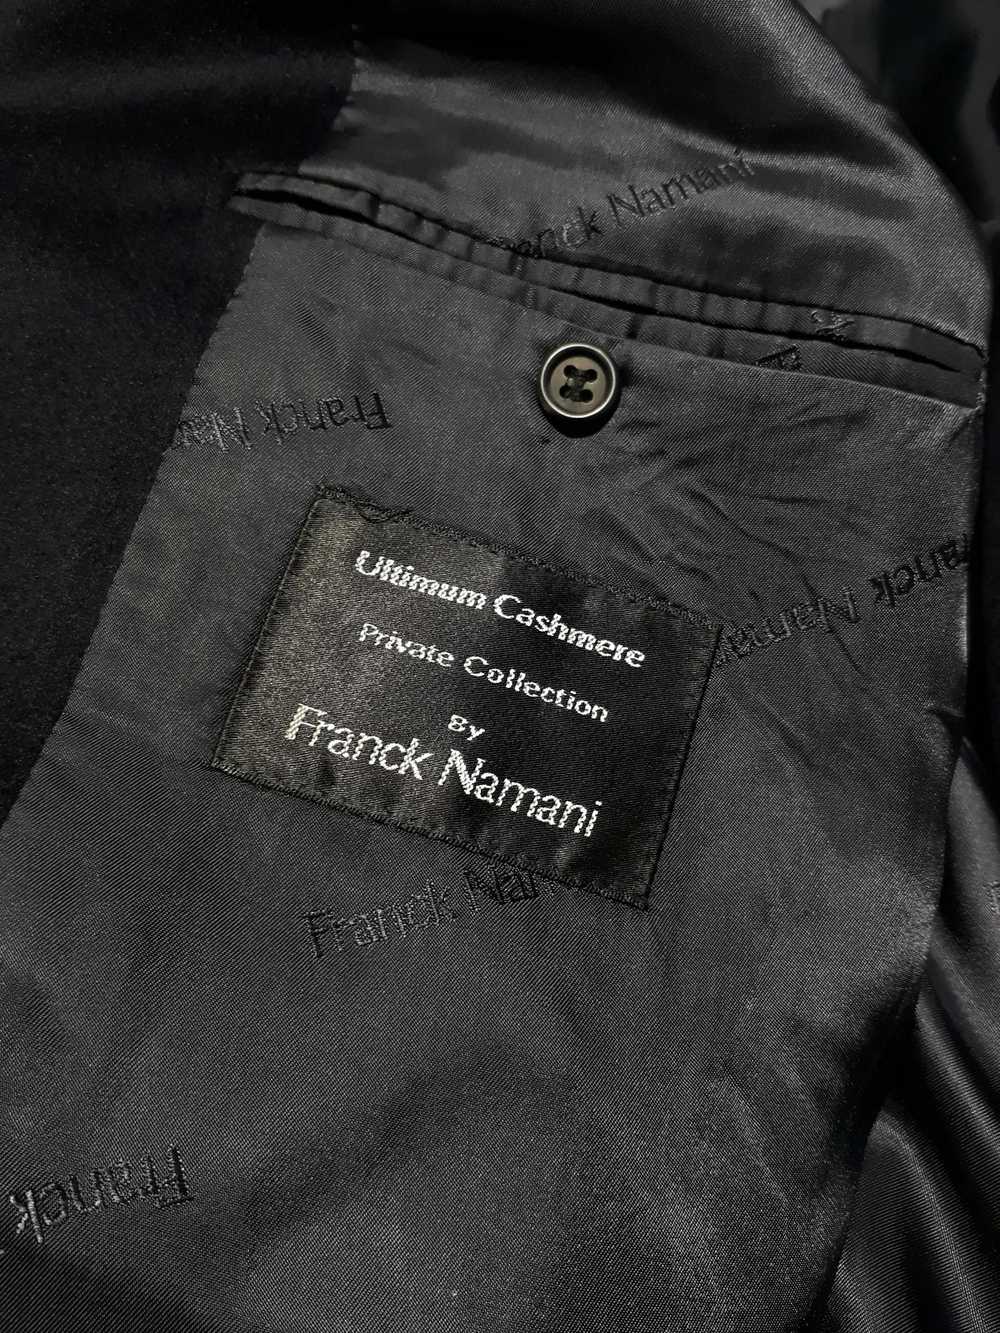 Franck Namani Franck Namani cashmere coat size L-… - image 10